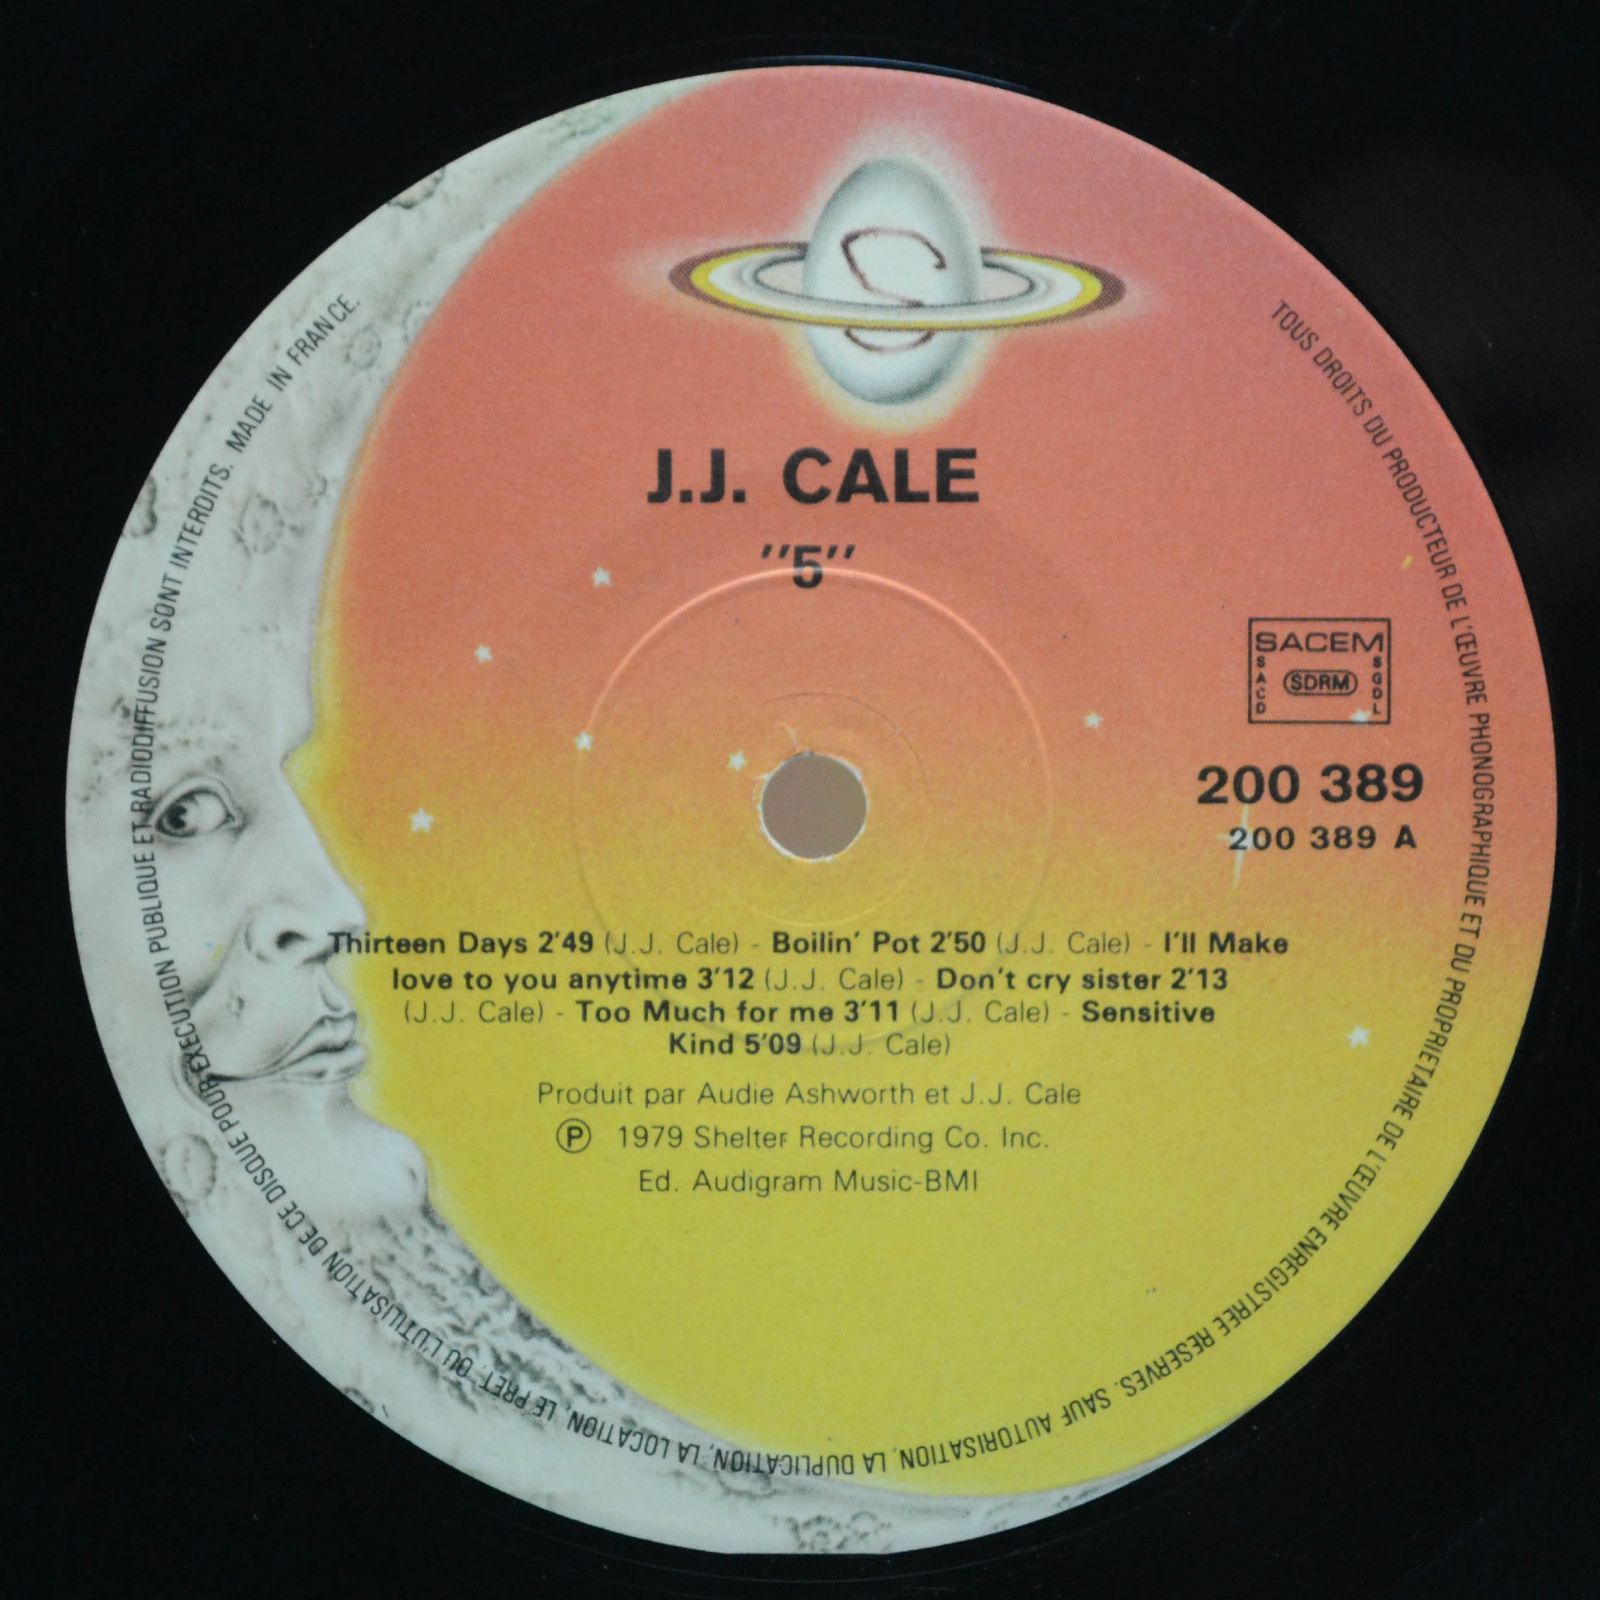 J.J. Cale — 5, 1979